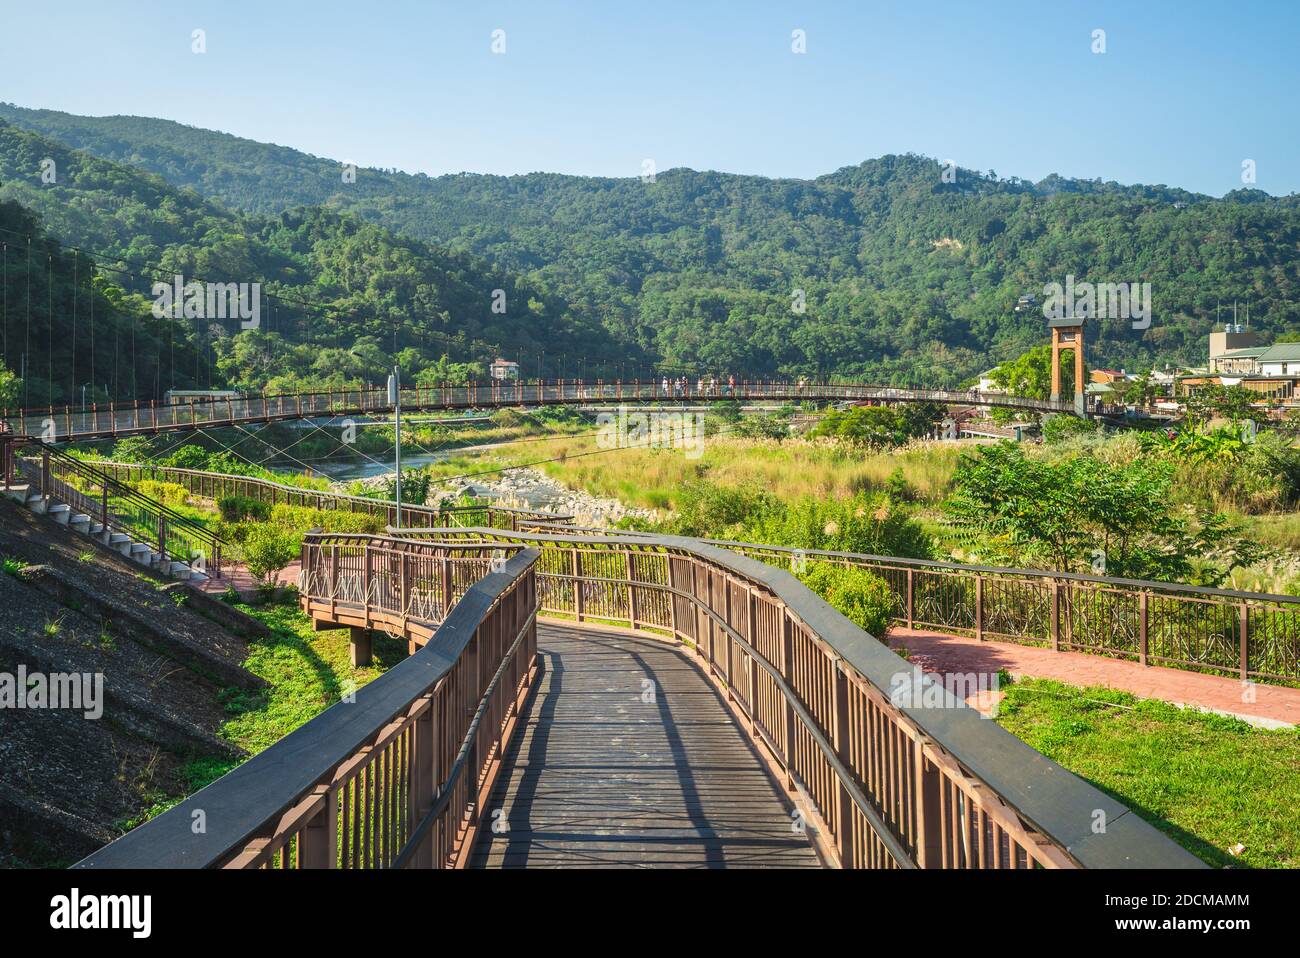 scenery of nanjiang riverside park in nanzhuang township, taiwan Stock Photo